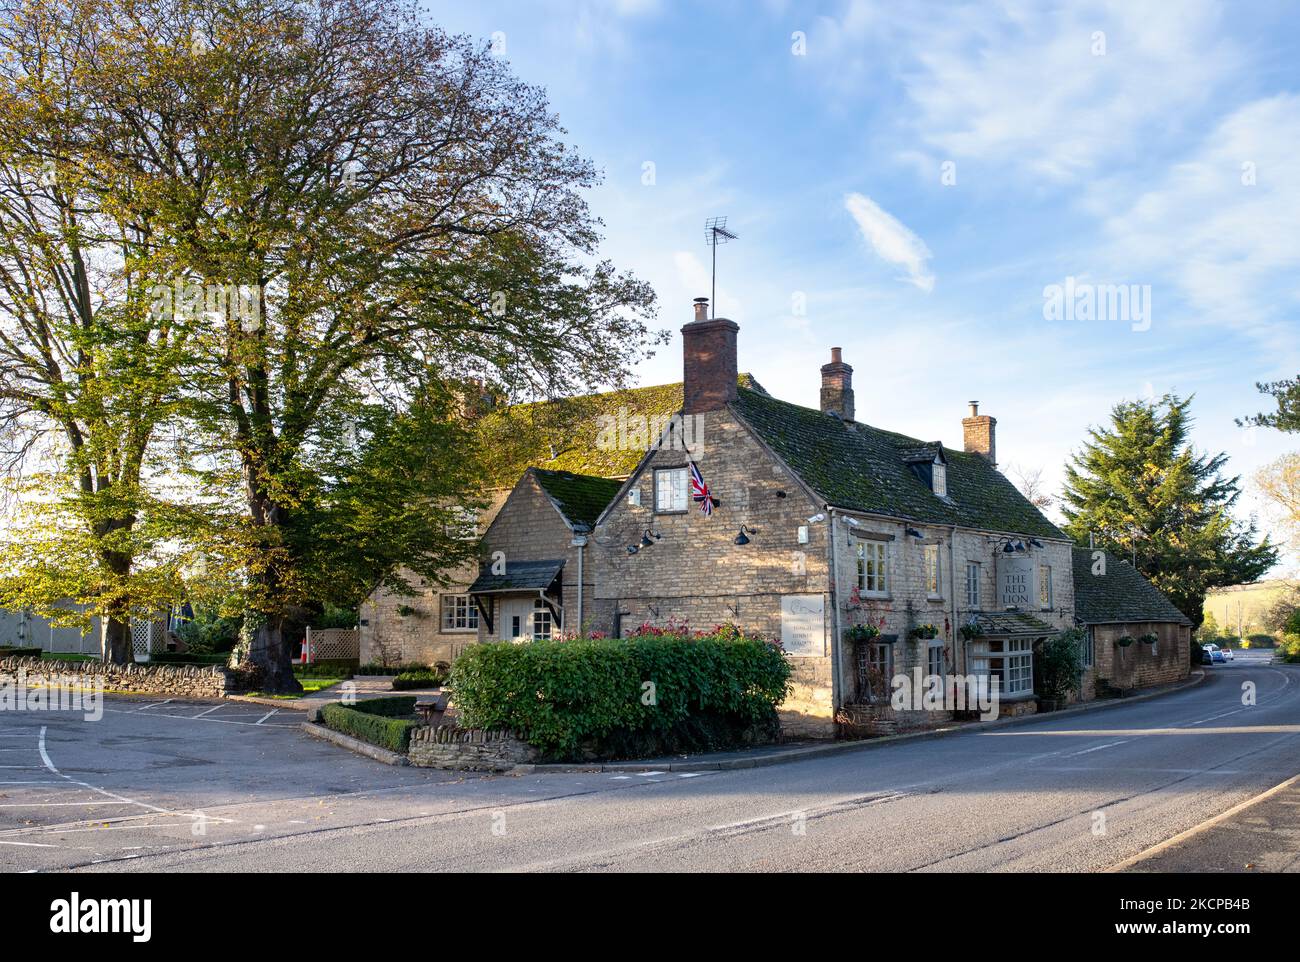 Le pub Red Lion en automne. Long Compton, Warwickshire, Angleterre Banque D'Images